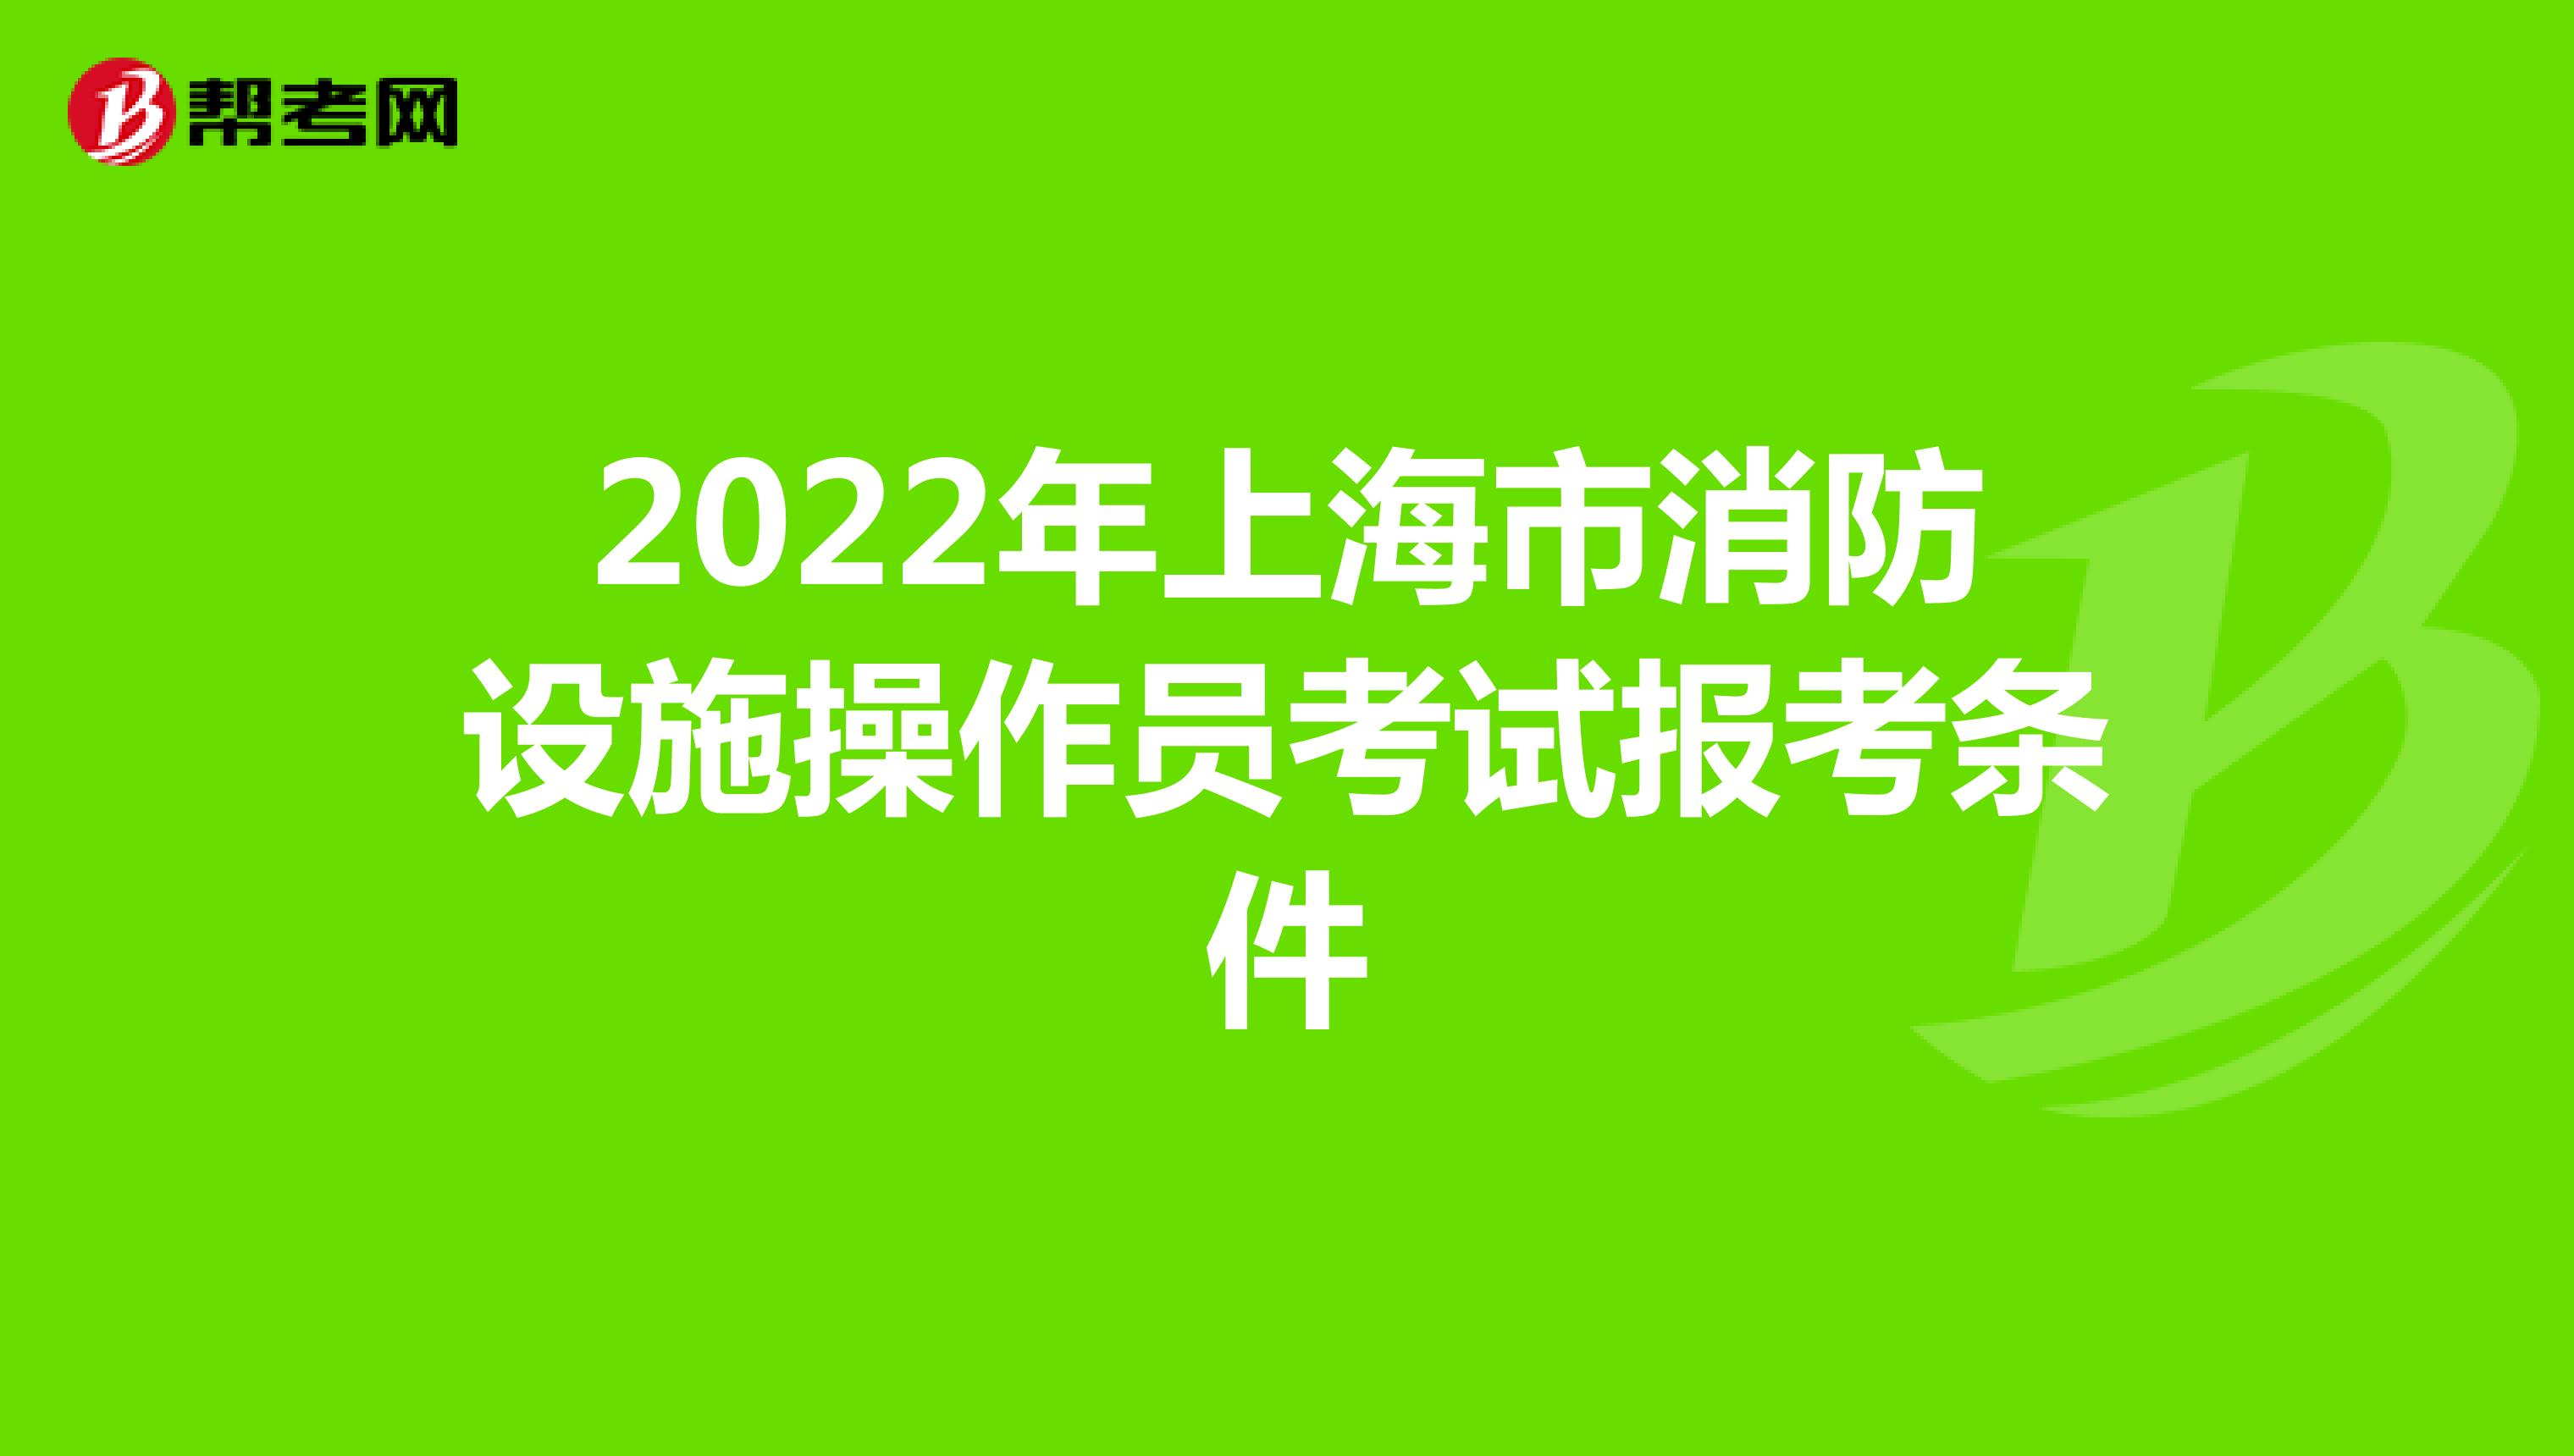 2022年上海市消防设施操作员考试报考条件